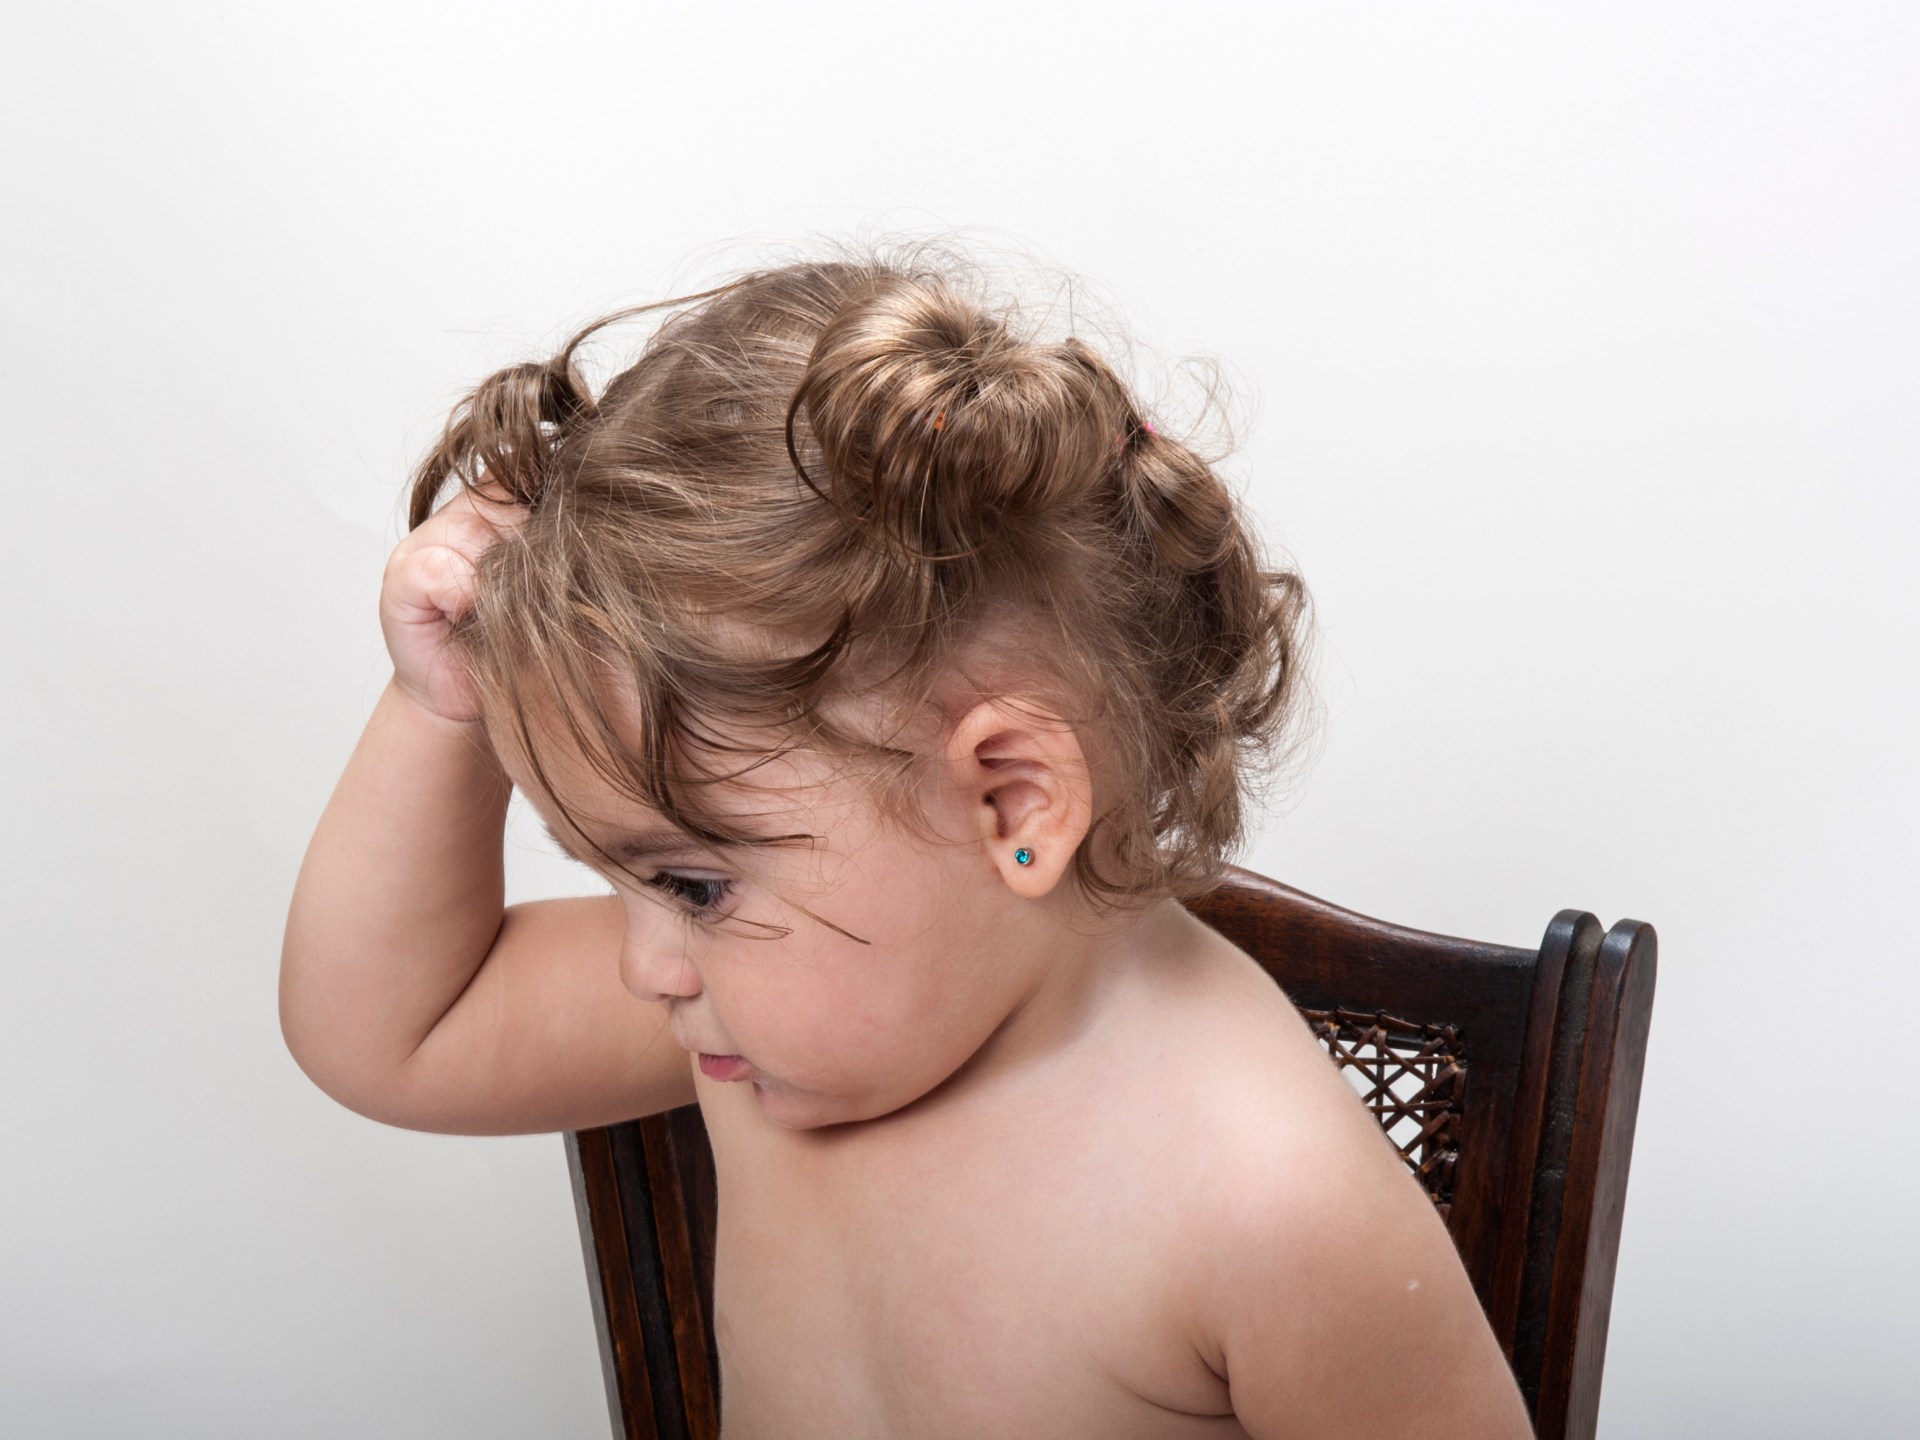 لماذا يشد طفلك شعره دون مقدمات؟ | مرأة – البوكس نيوز